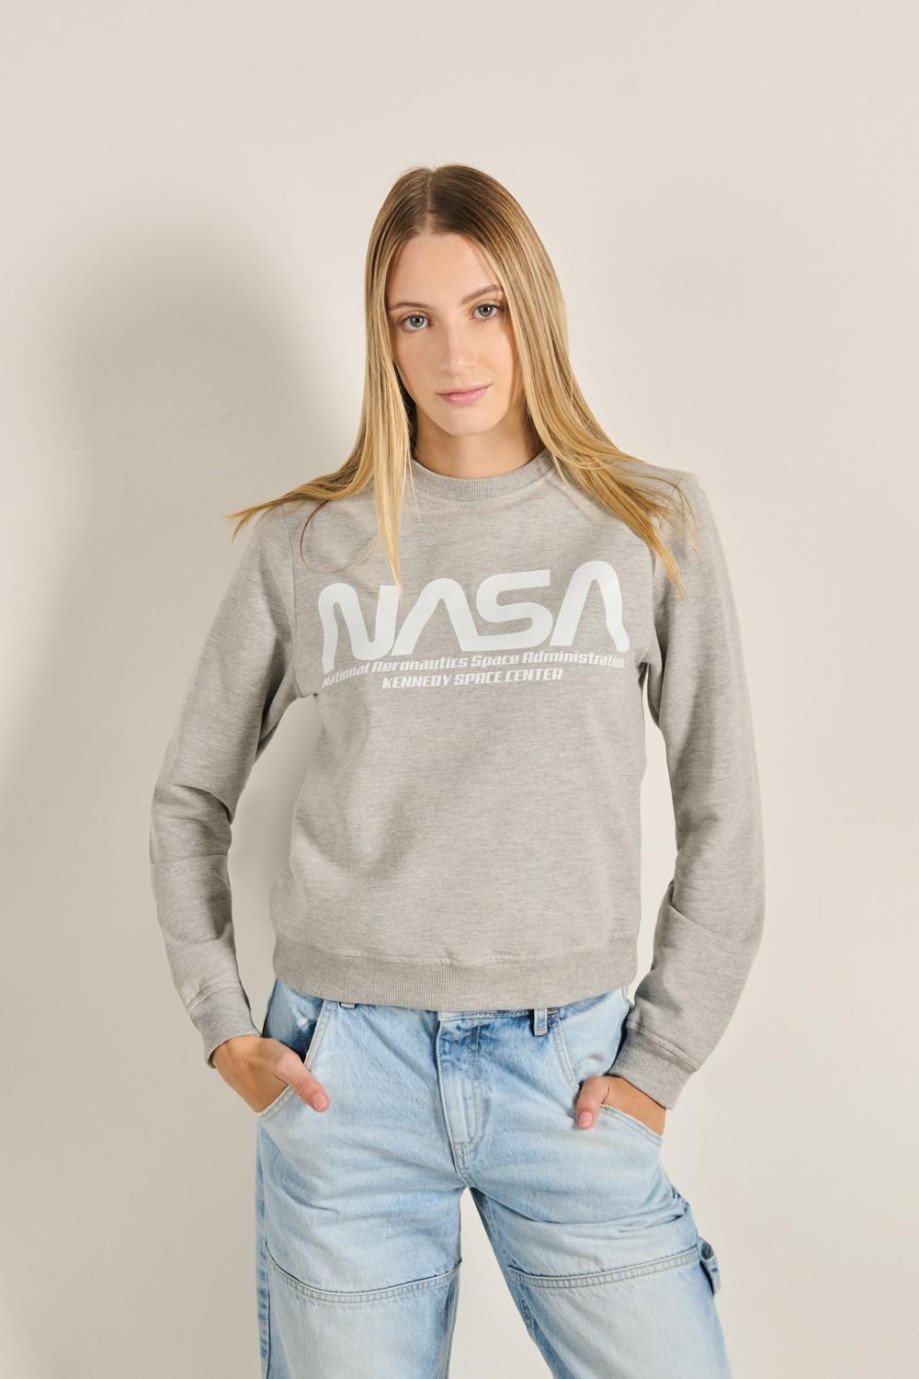 Buzo unicolor con cuello redondo y diseño de NASA